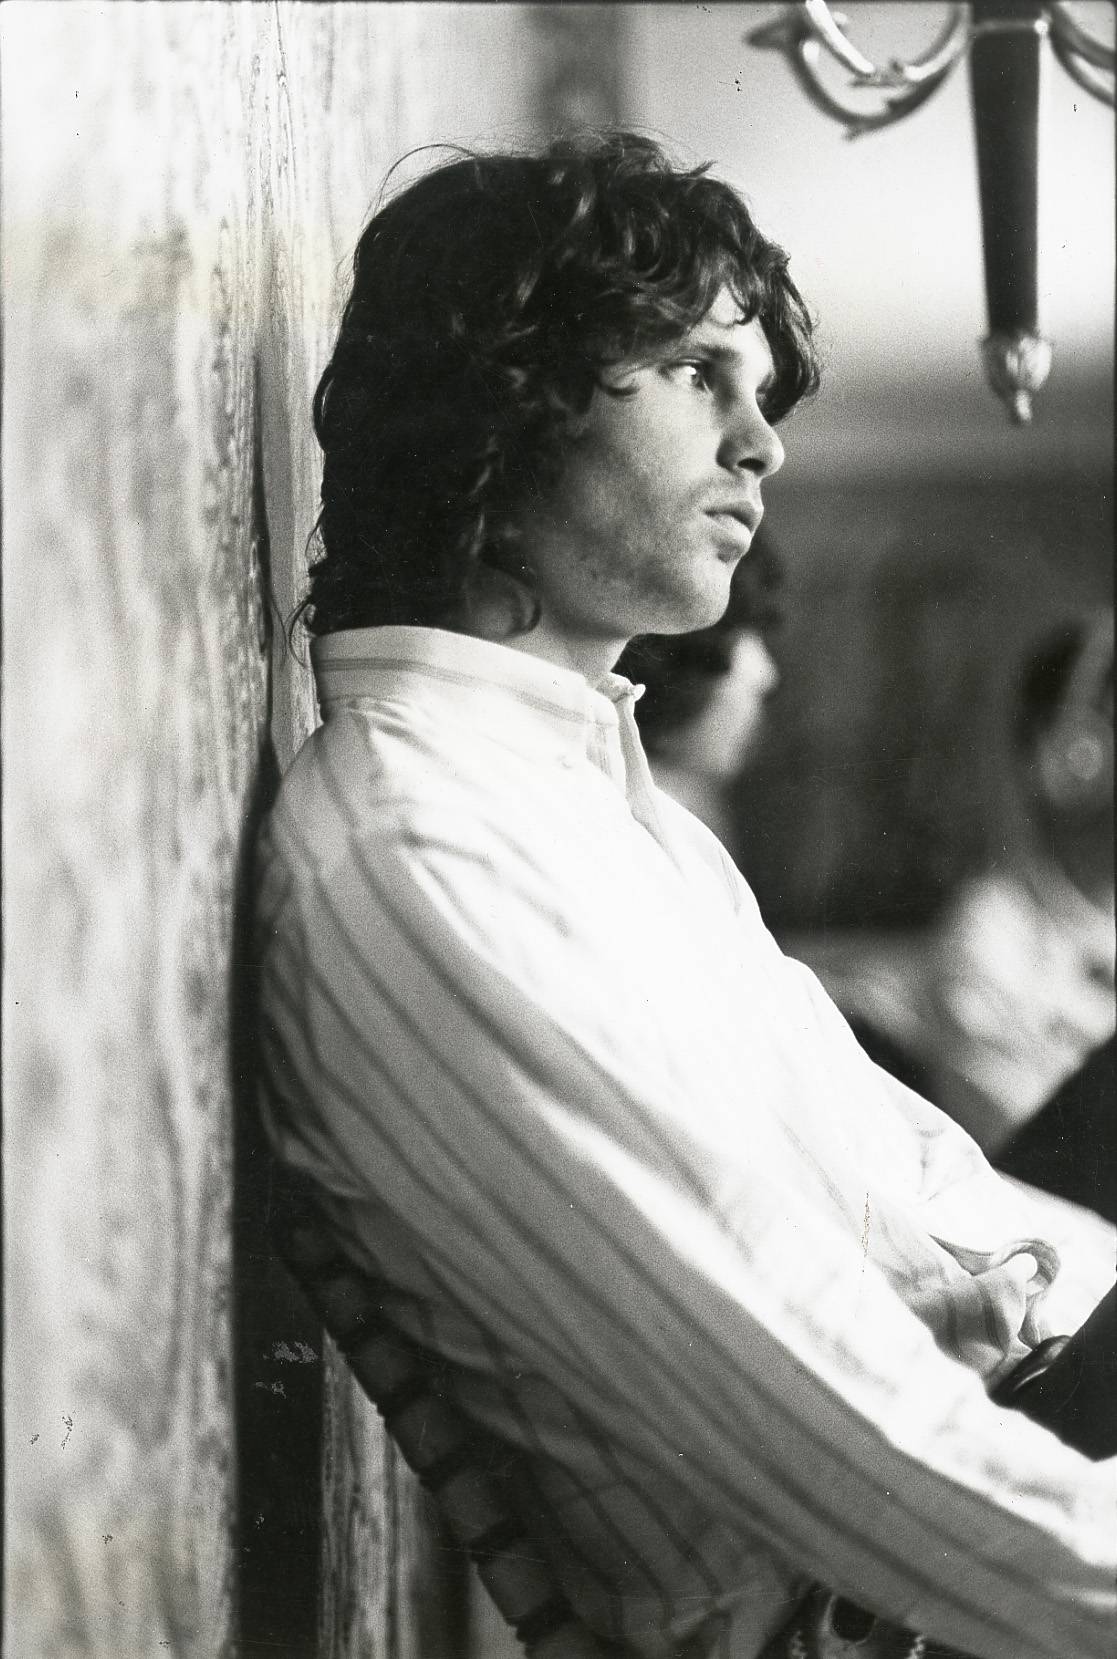 "Profondo, timido, gentile. Ecco il vero Jim Morrison"